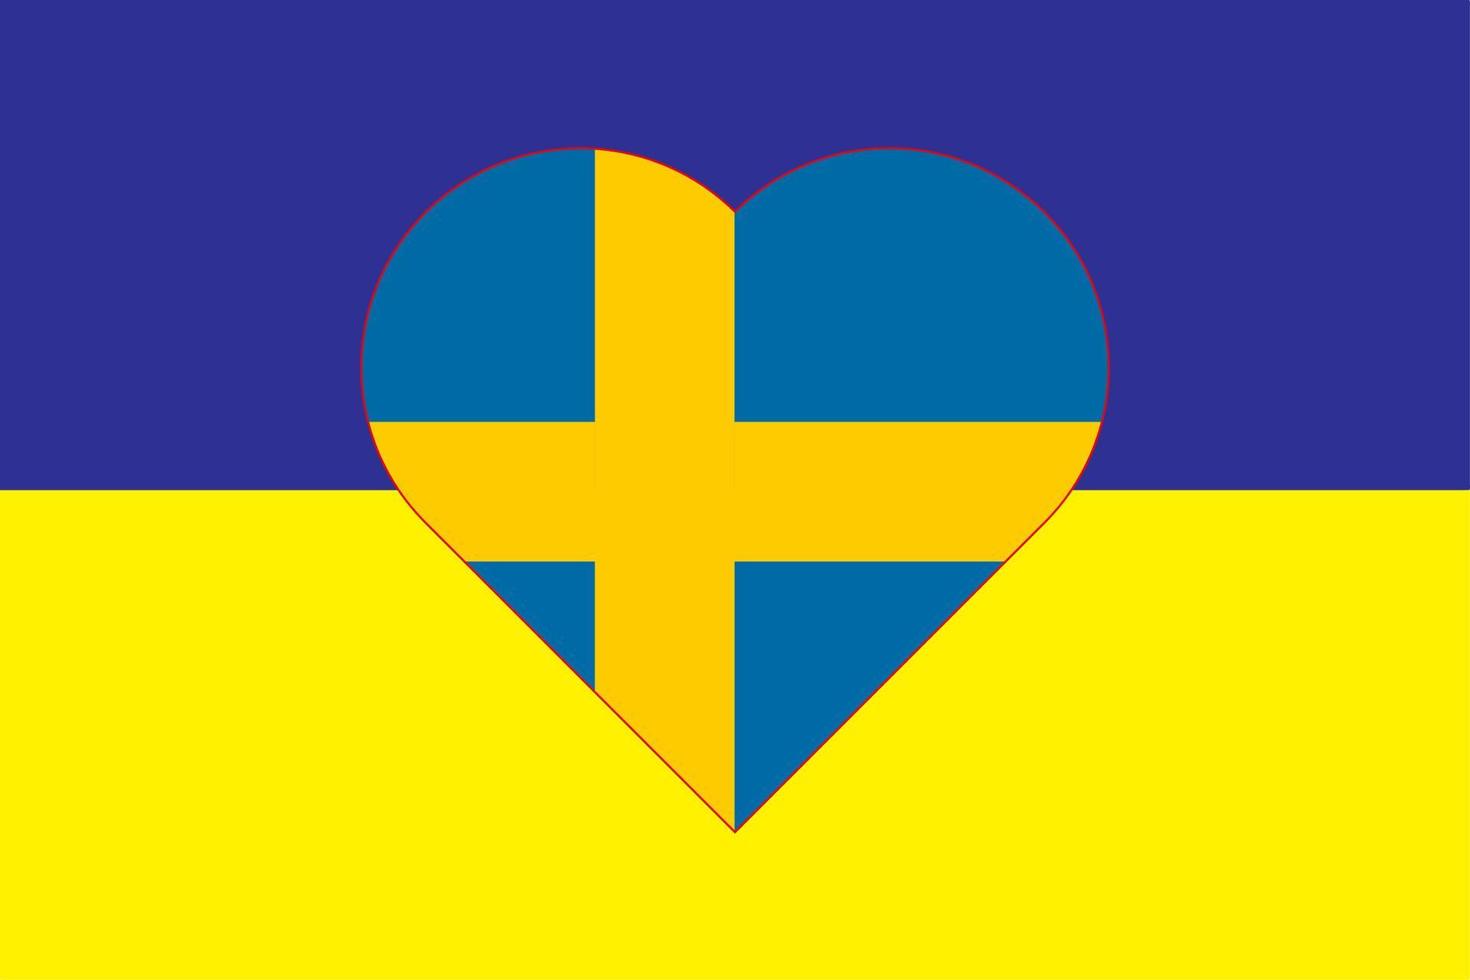 coeur peint aux couleurs du drapeau de la suède sur le drapeau de l'ukraine. illustration vectorielle d'un coeur avec le symbole national de la suède sur fond bleu-jaune. vecteur